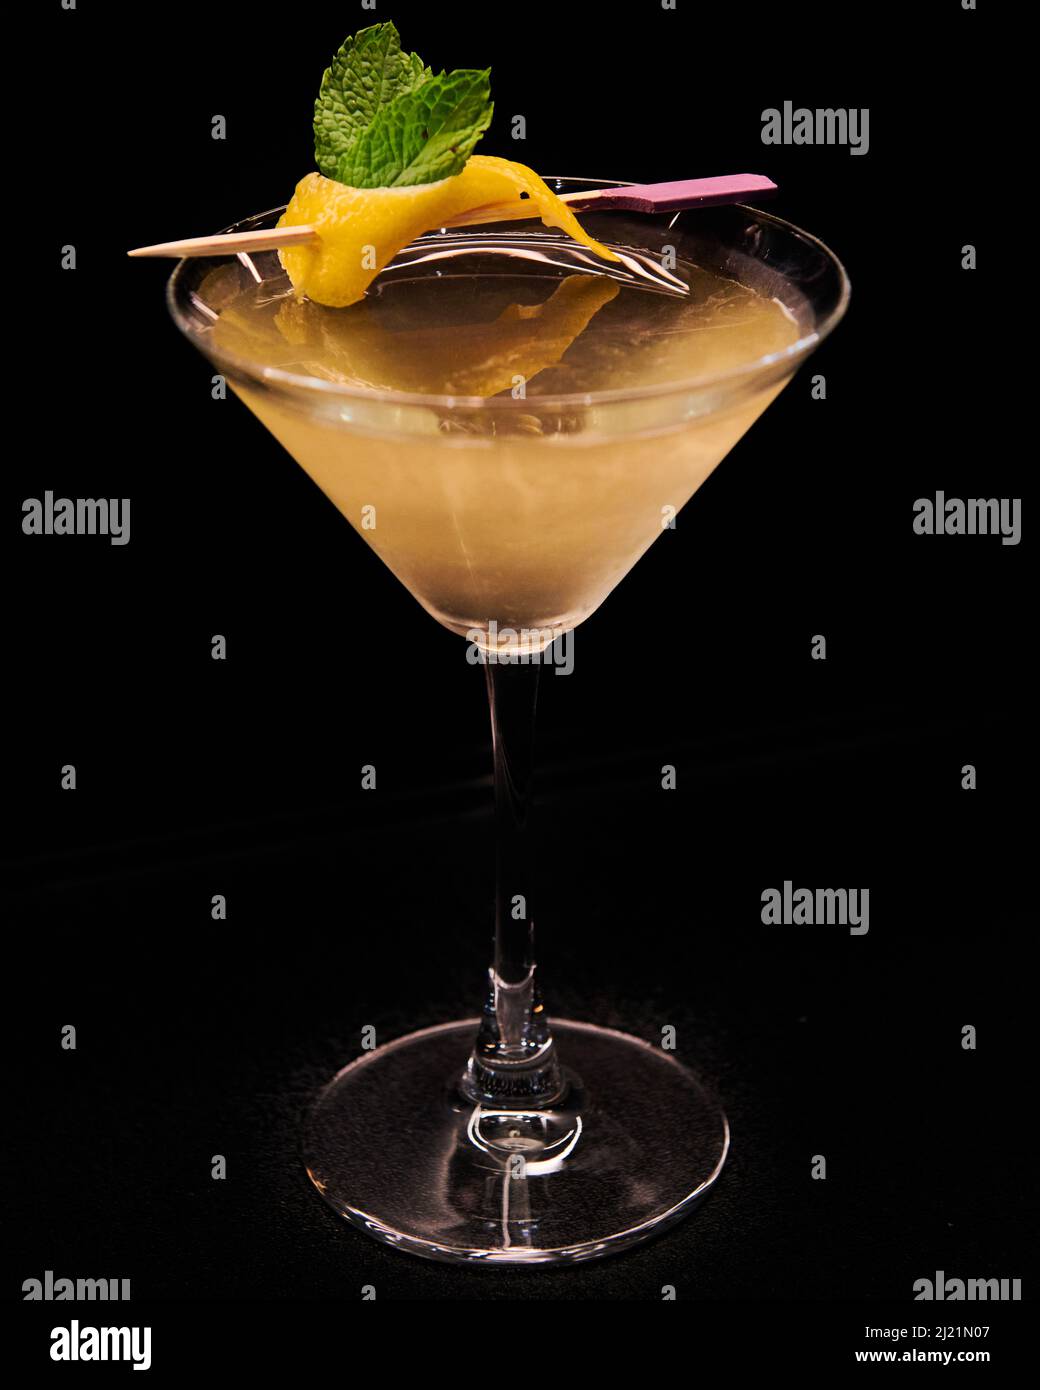 Martini à la vodka jaune vesper avec une garniture au zeste de citron Banque D'Images